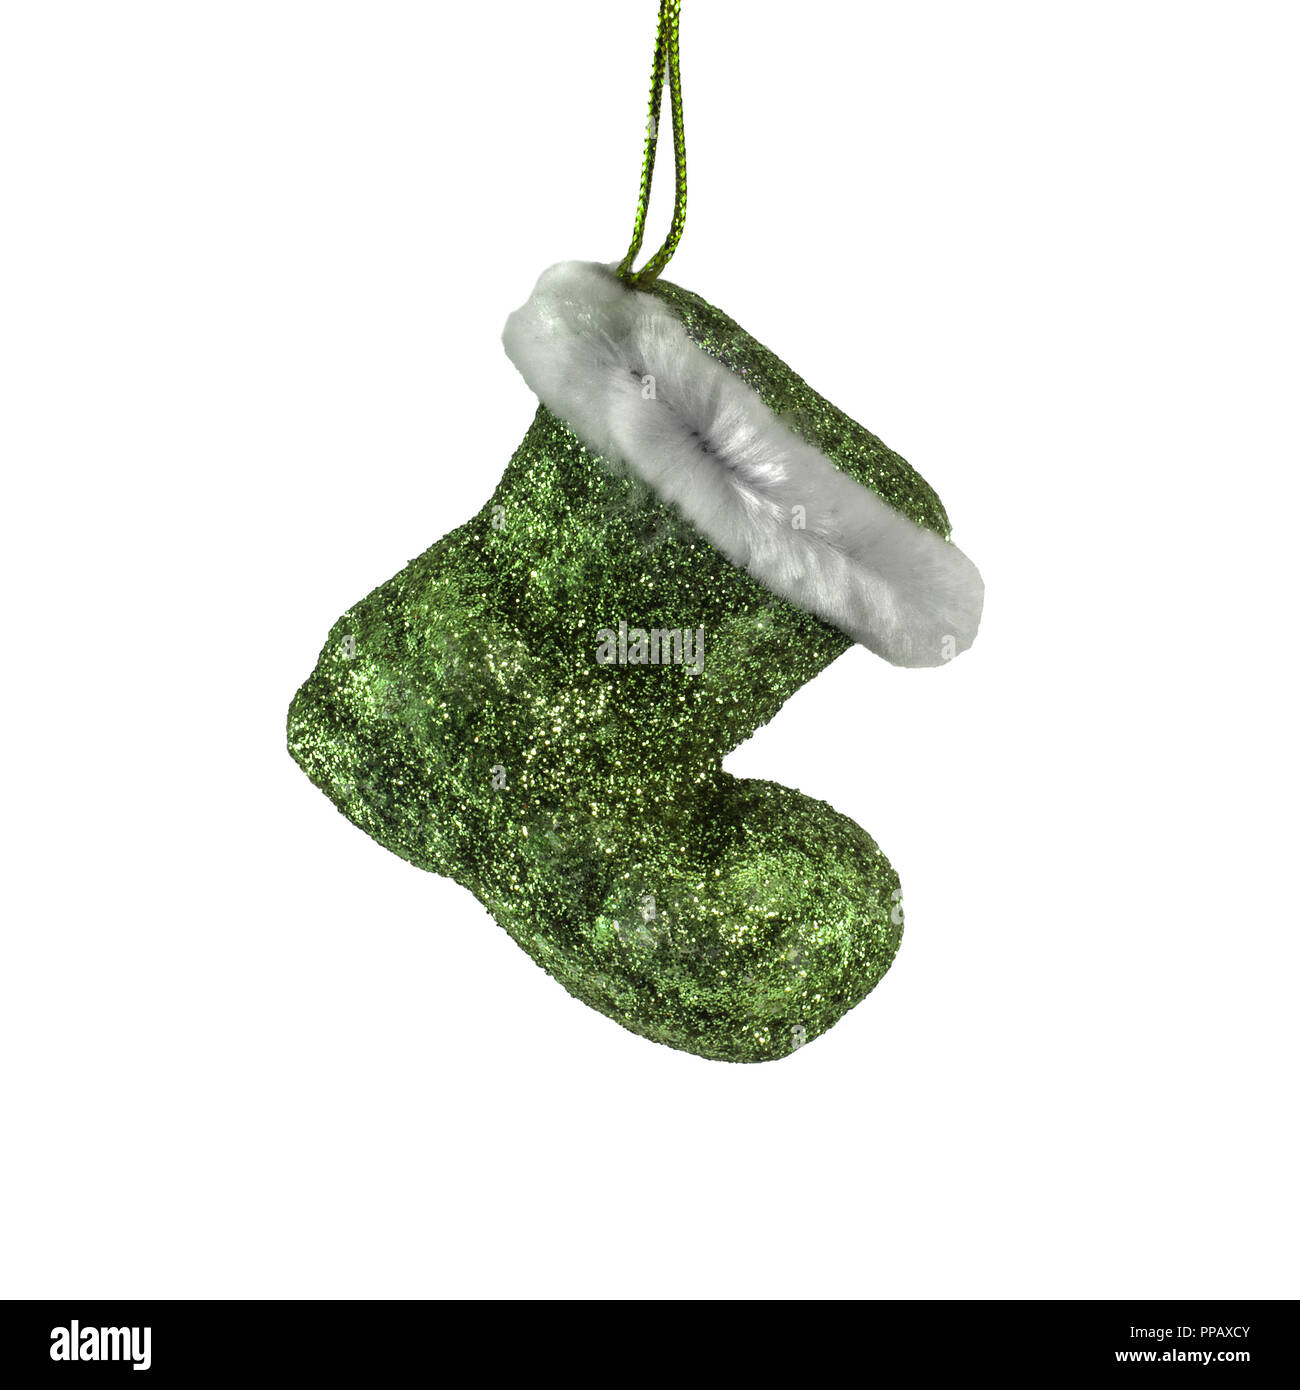 Grüne Farbe Santa Claus boot Ornament auf weißem Hintergrund Stockfoto